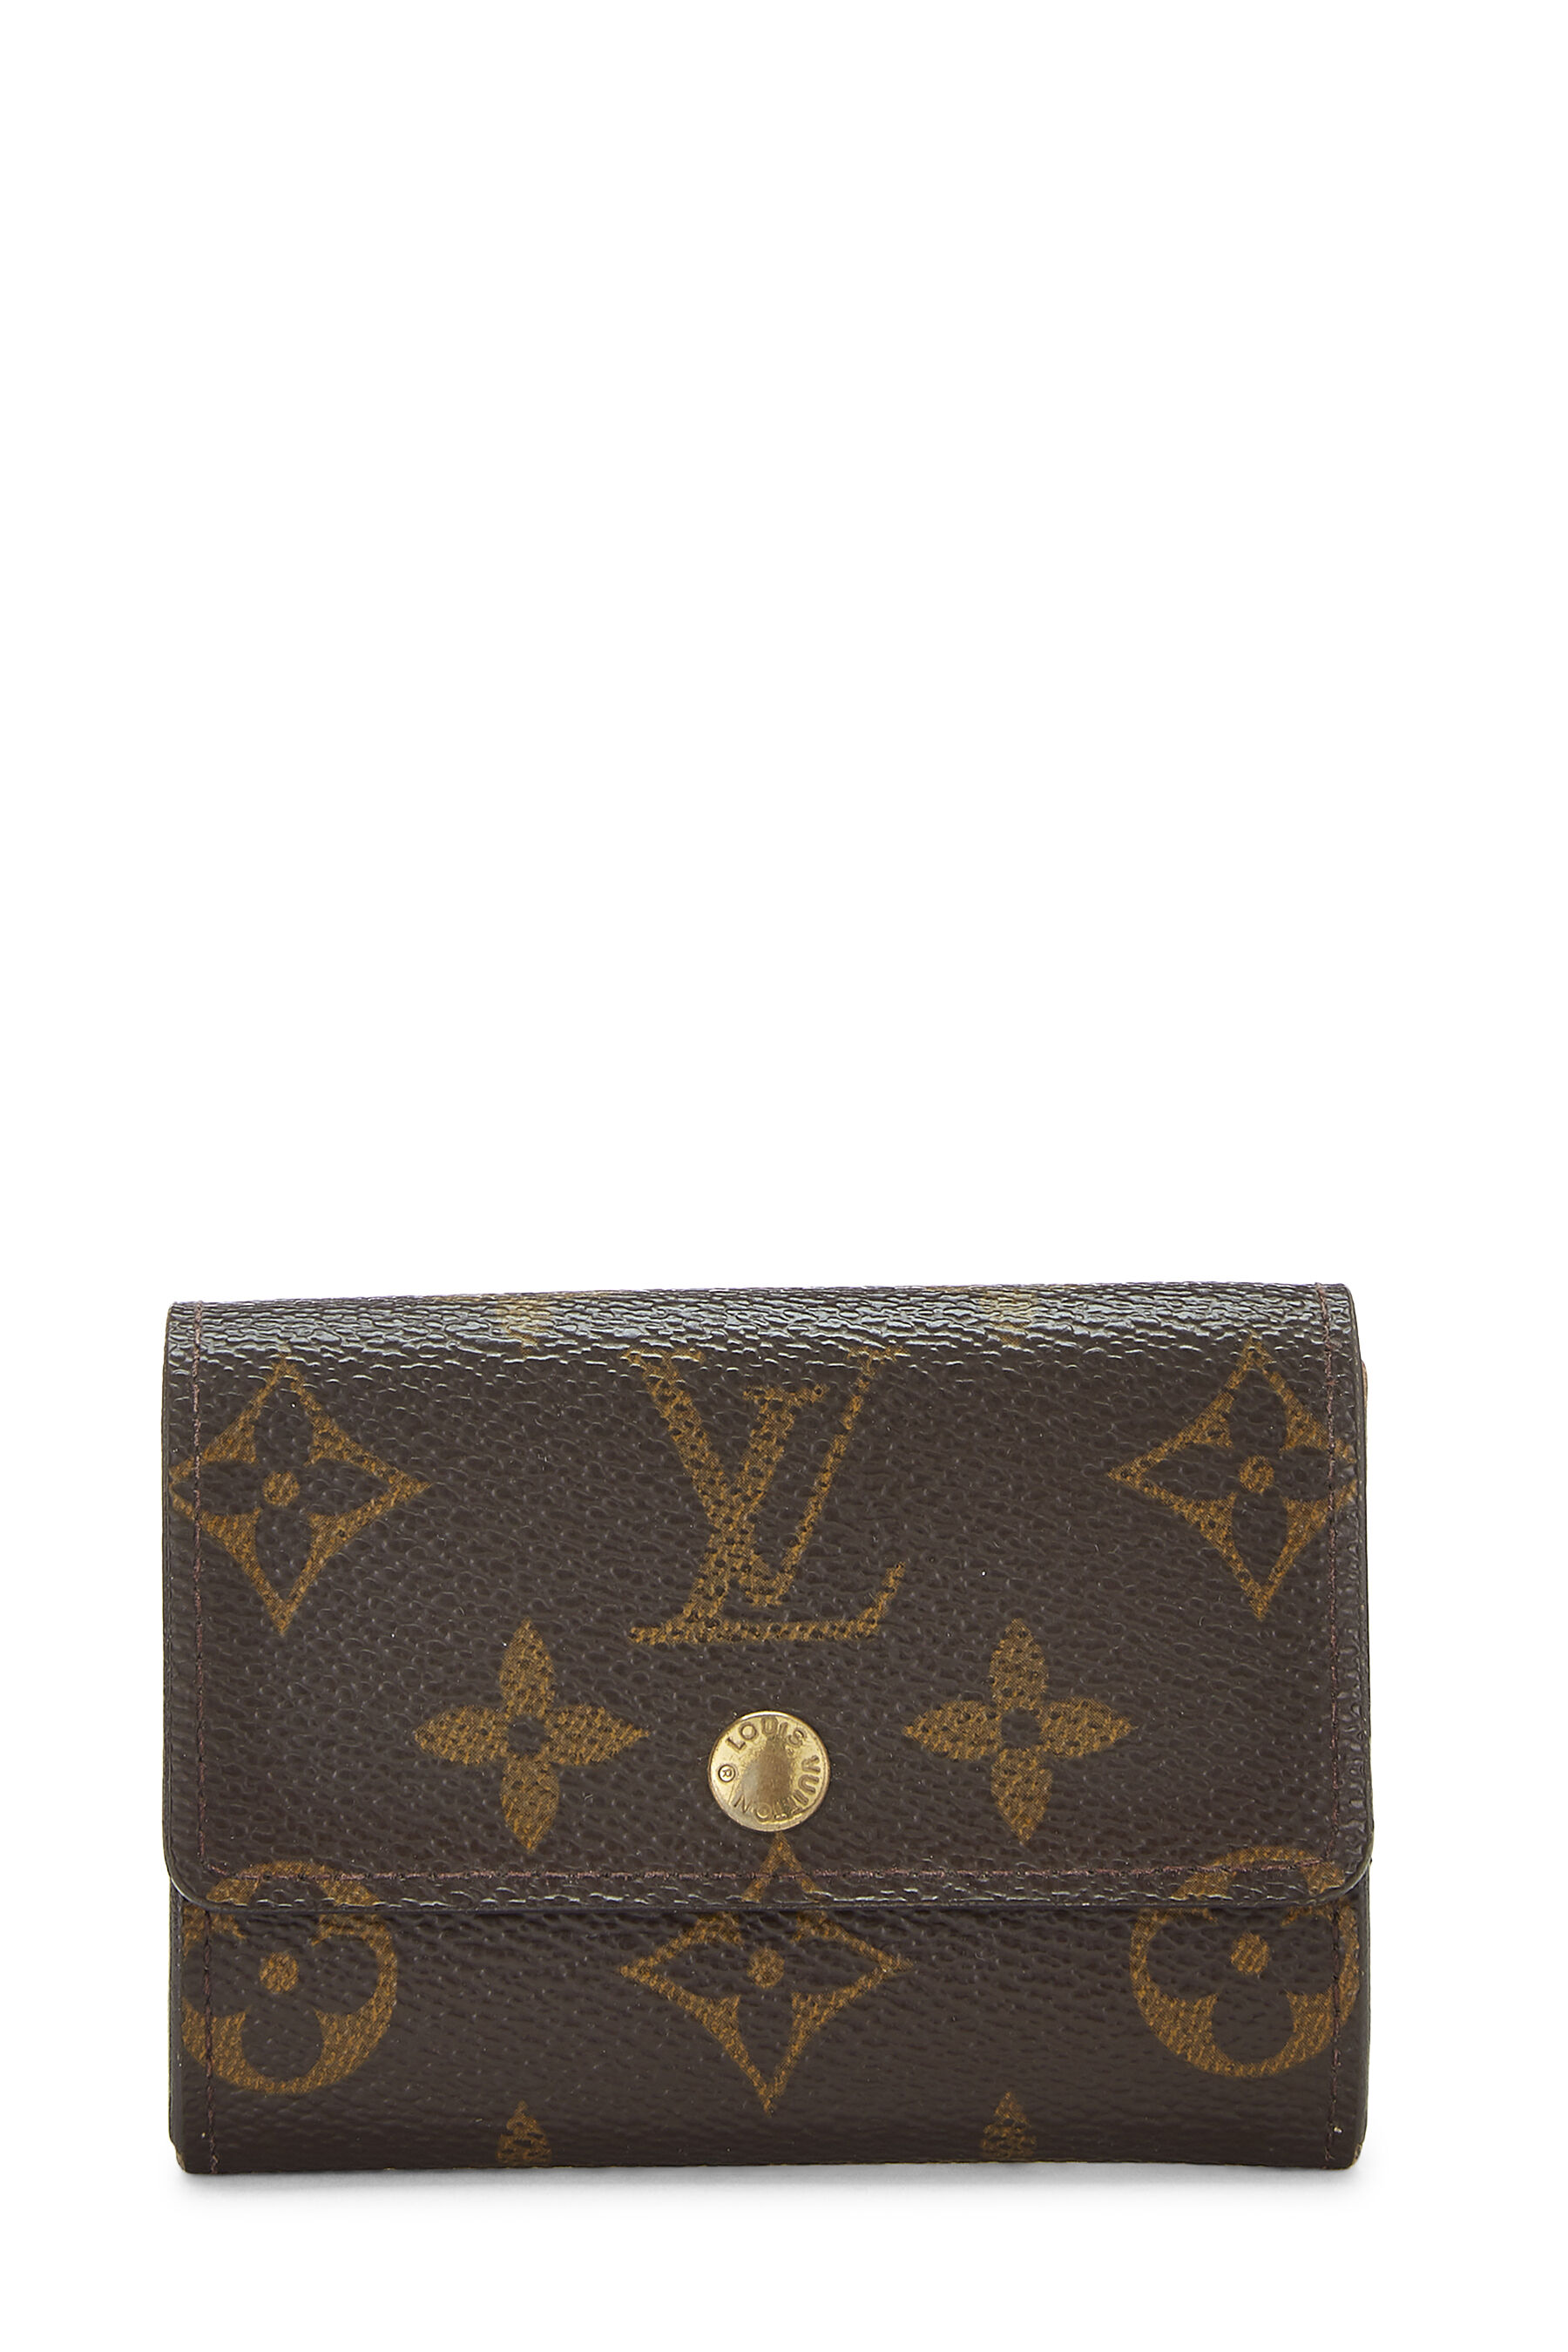 Louis Vuitton - Monogram Canvas Porte Monnaie Plat